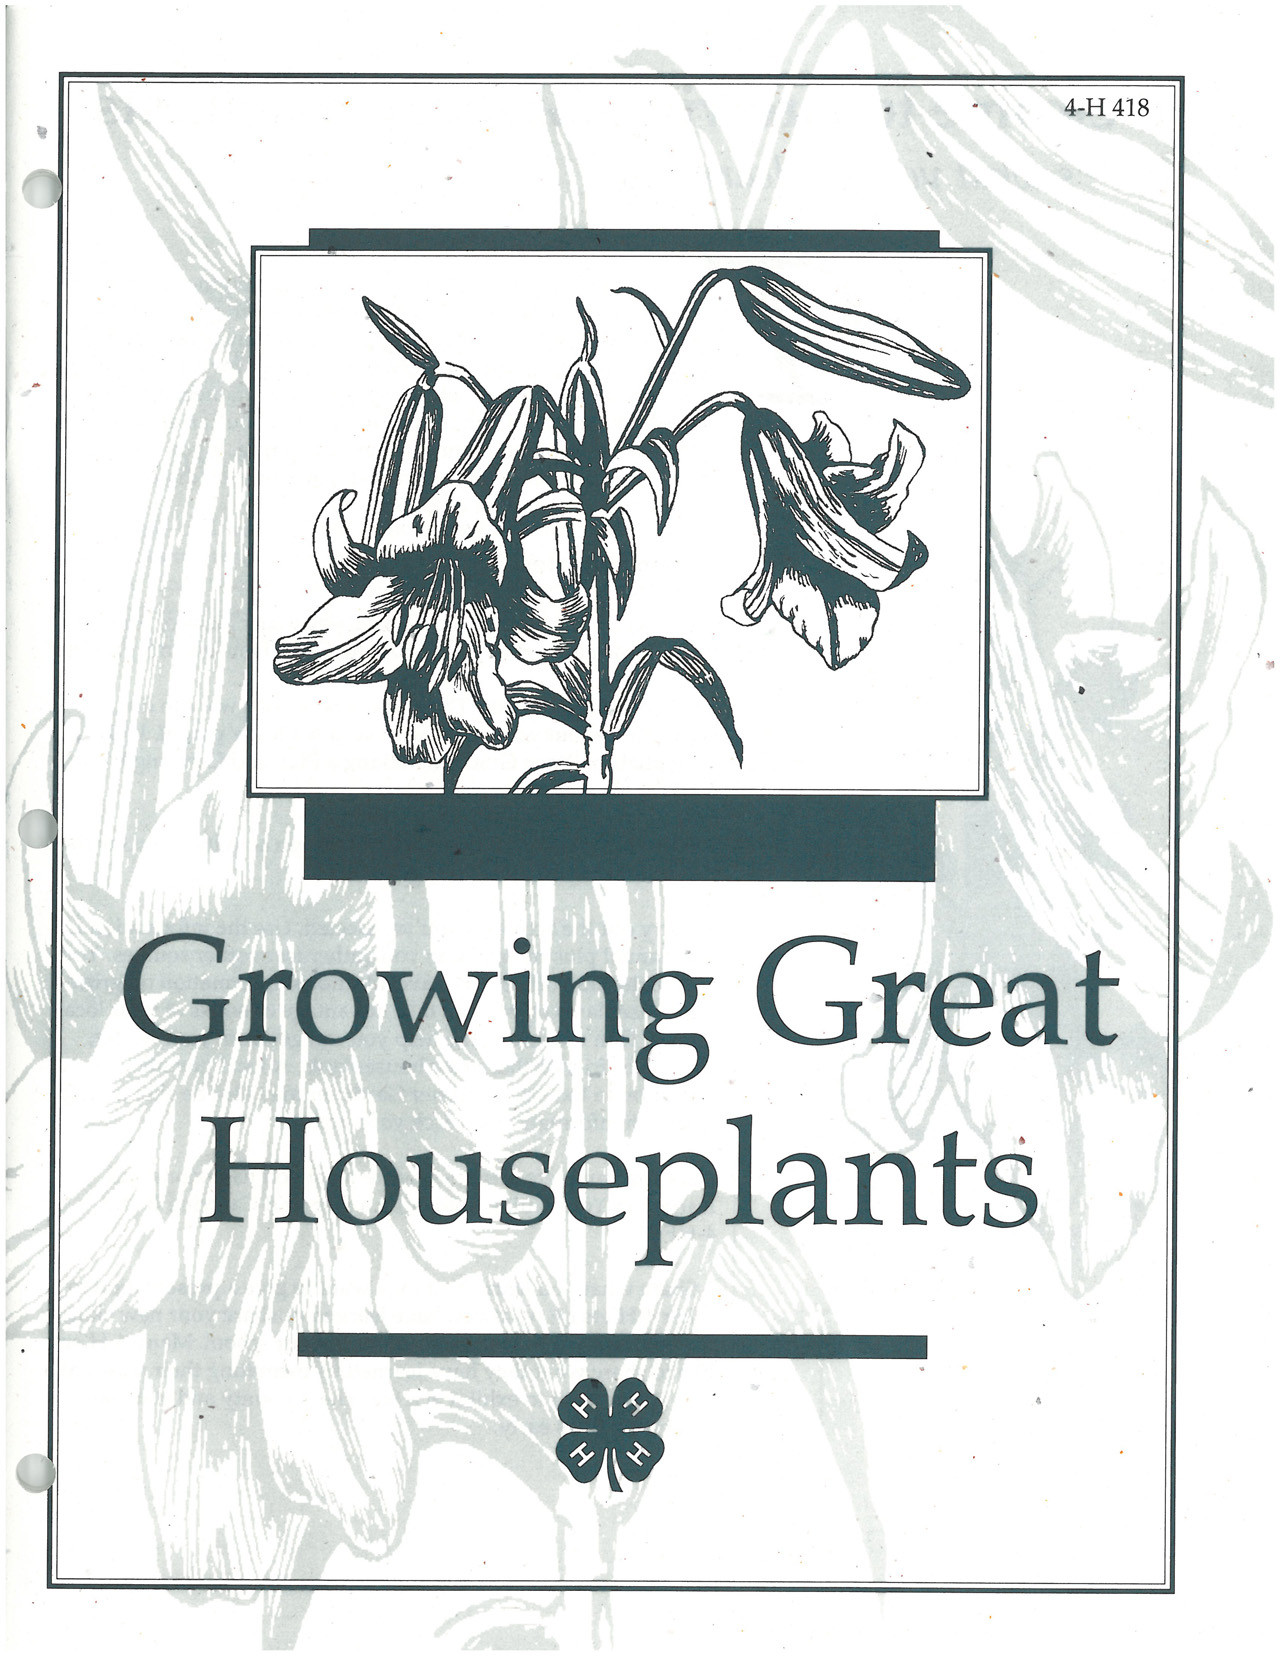 Growing Great Houseplants